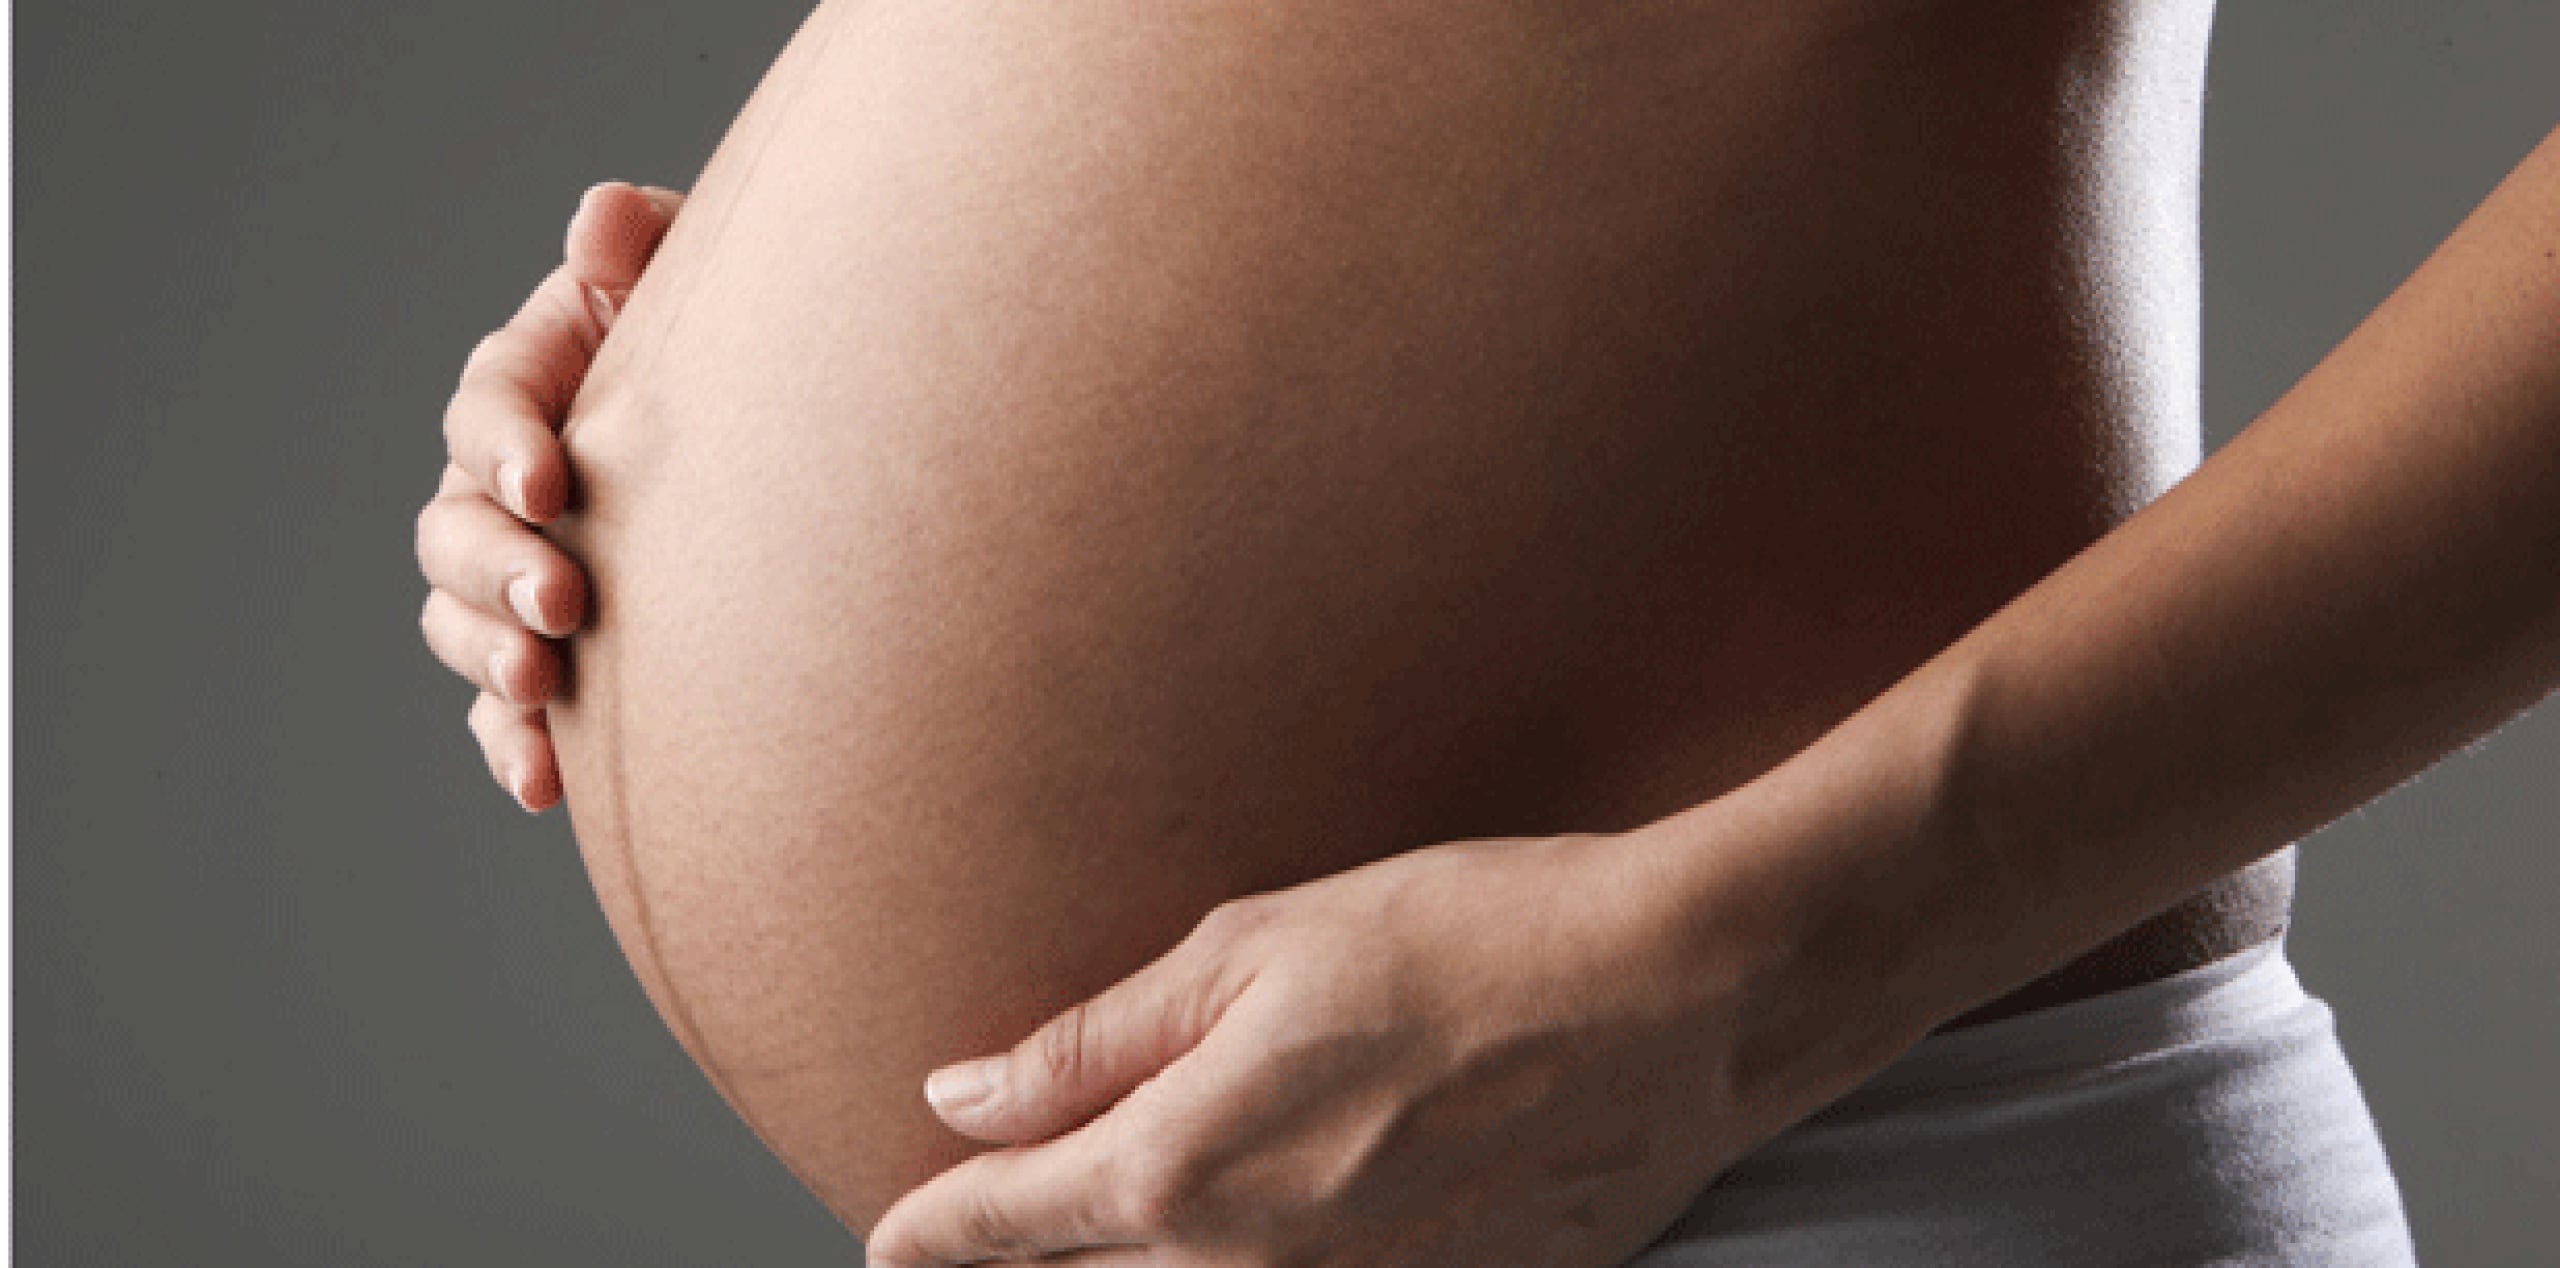 Jennifer Cramblett se embarazó en diciembre de 2011 a través de una inseminación artificial en la que se usó semen donado por un hombre negro en vez de uno blanco que ella y su pareja habían seleccionado. (Archivo)